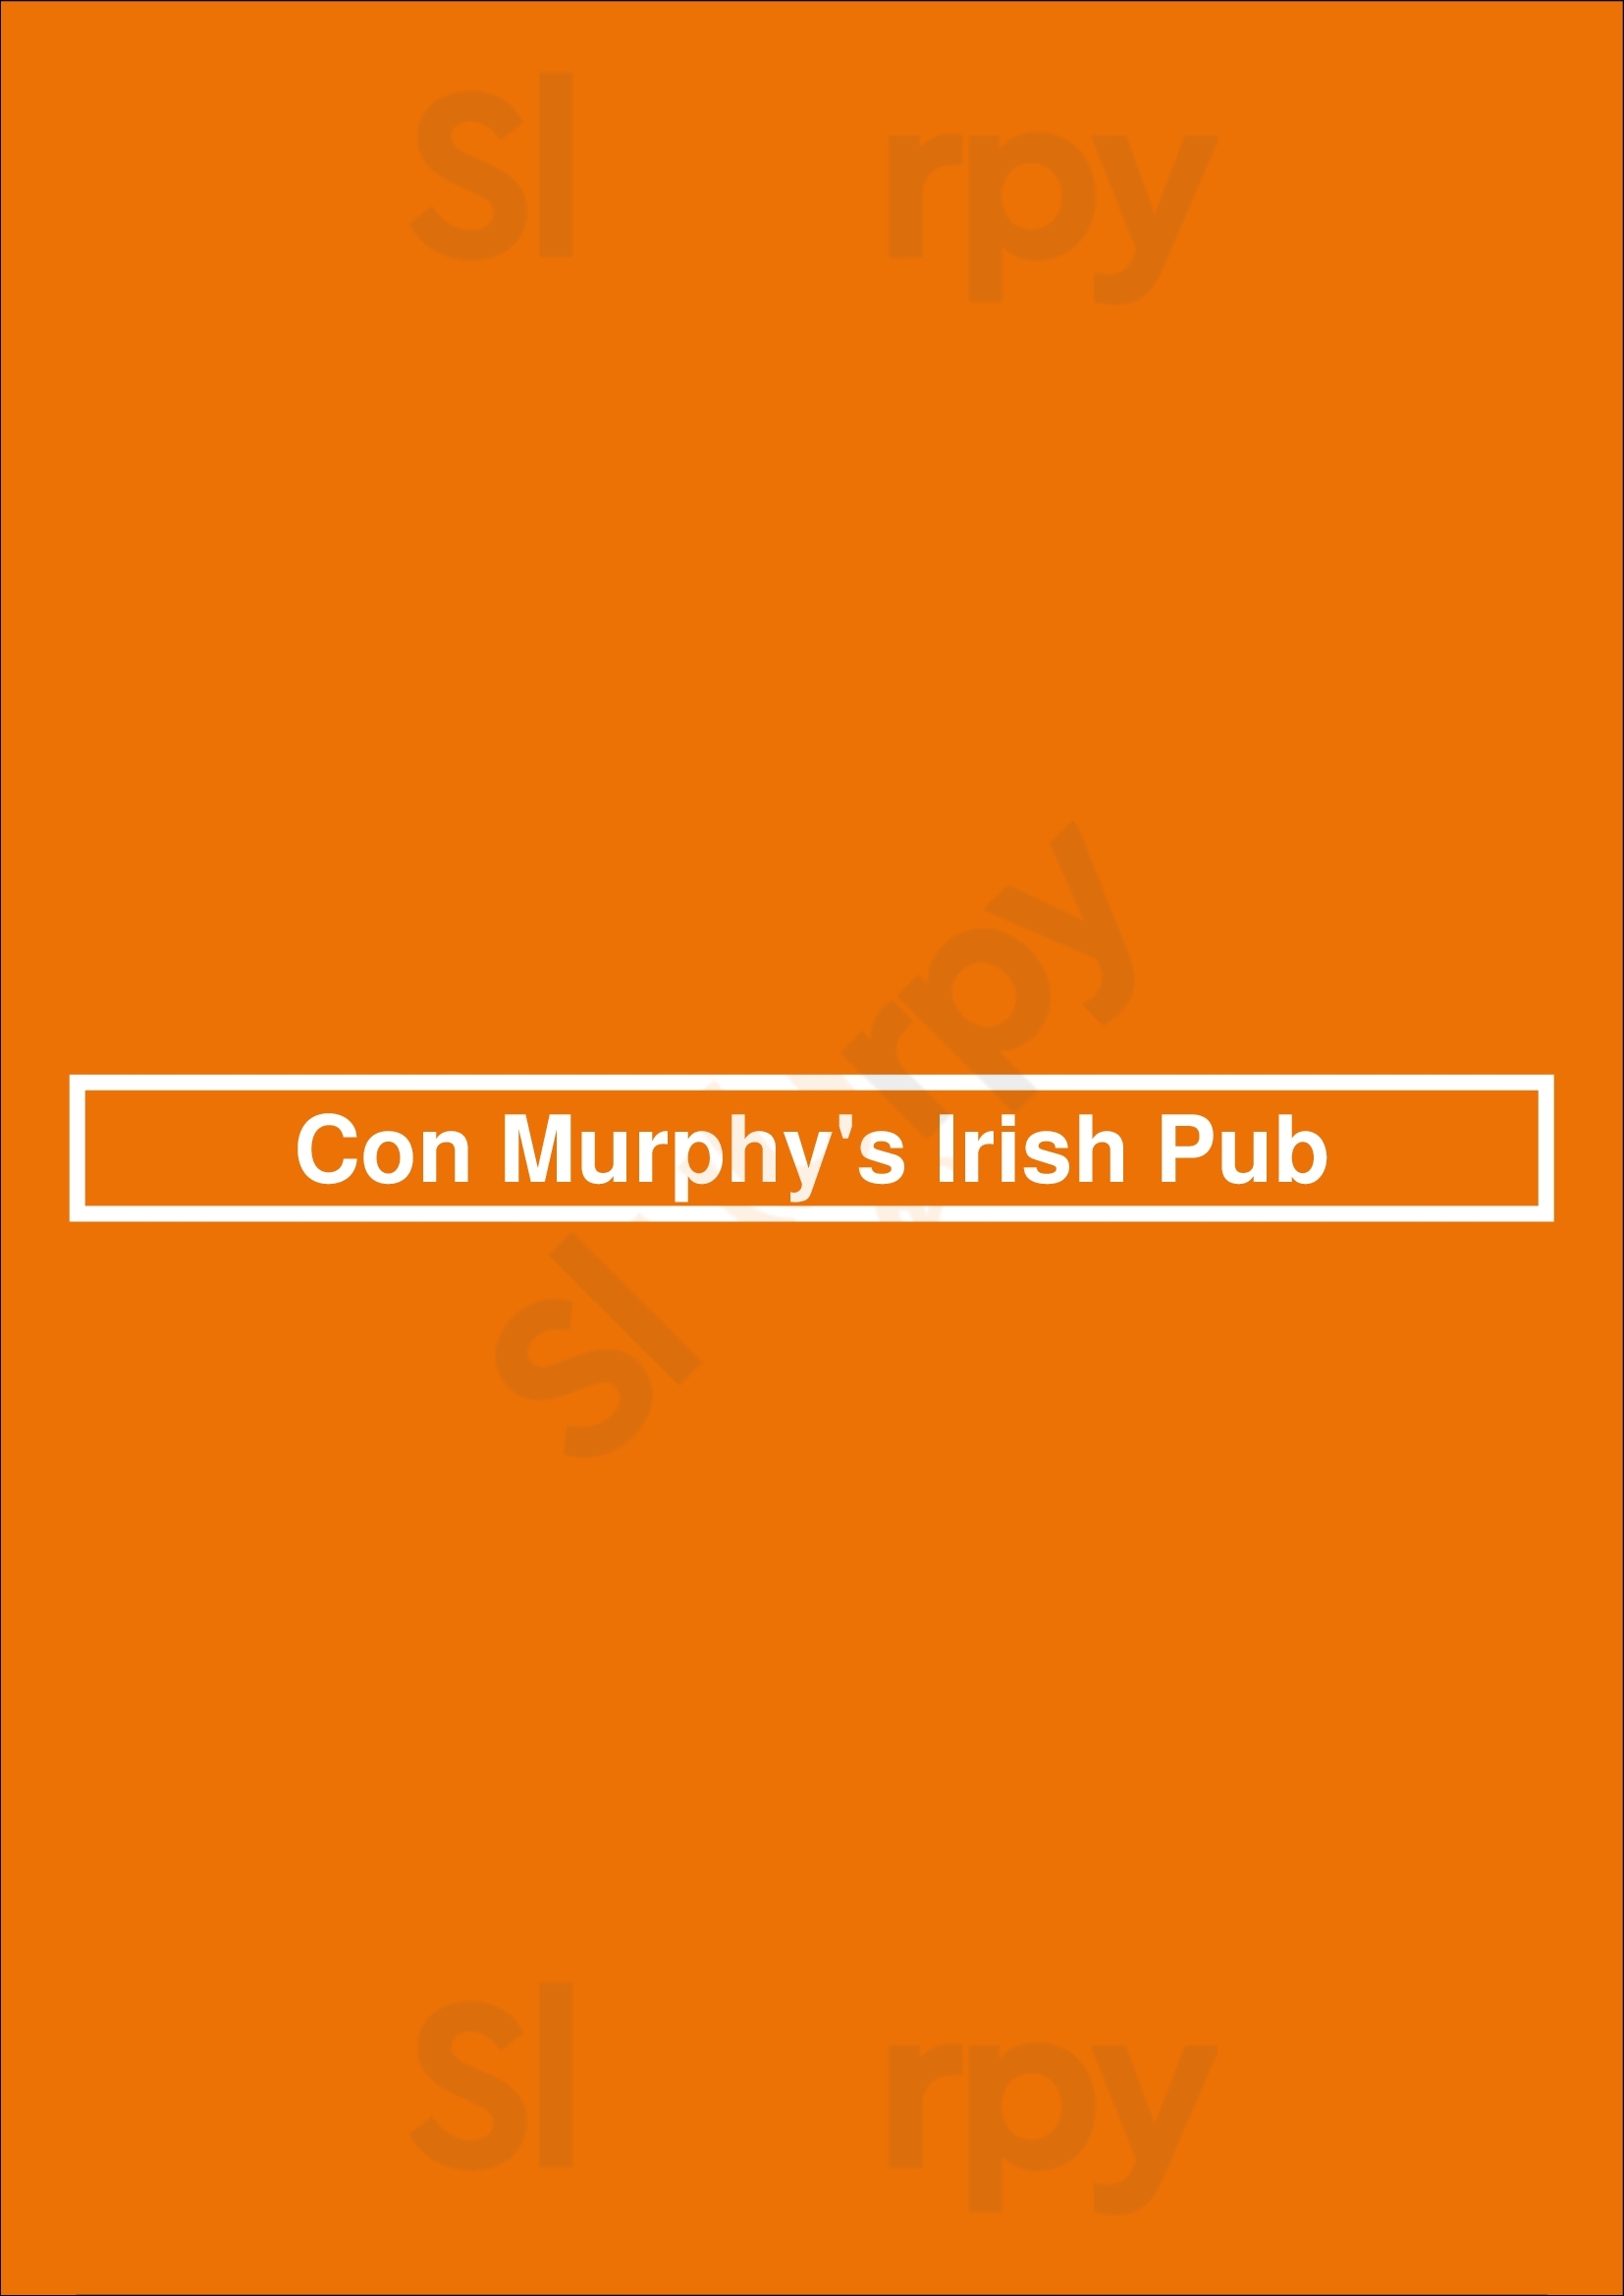 Con Murphy's Irish Pub Philadelphia Menu - 1